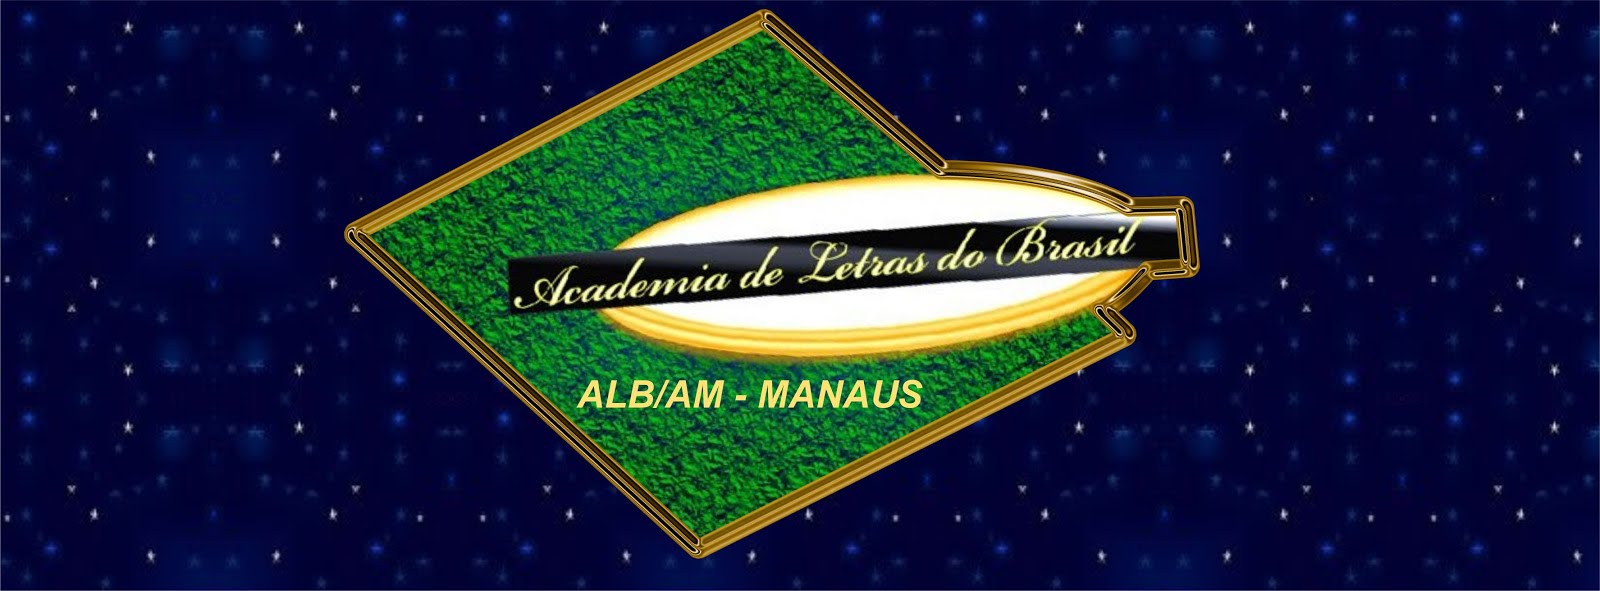 ALB/AM - Manaus